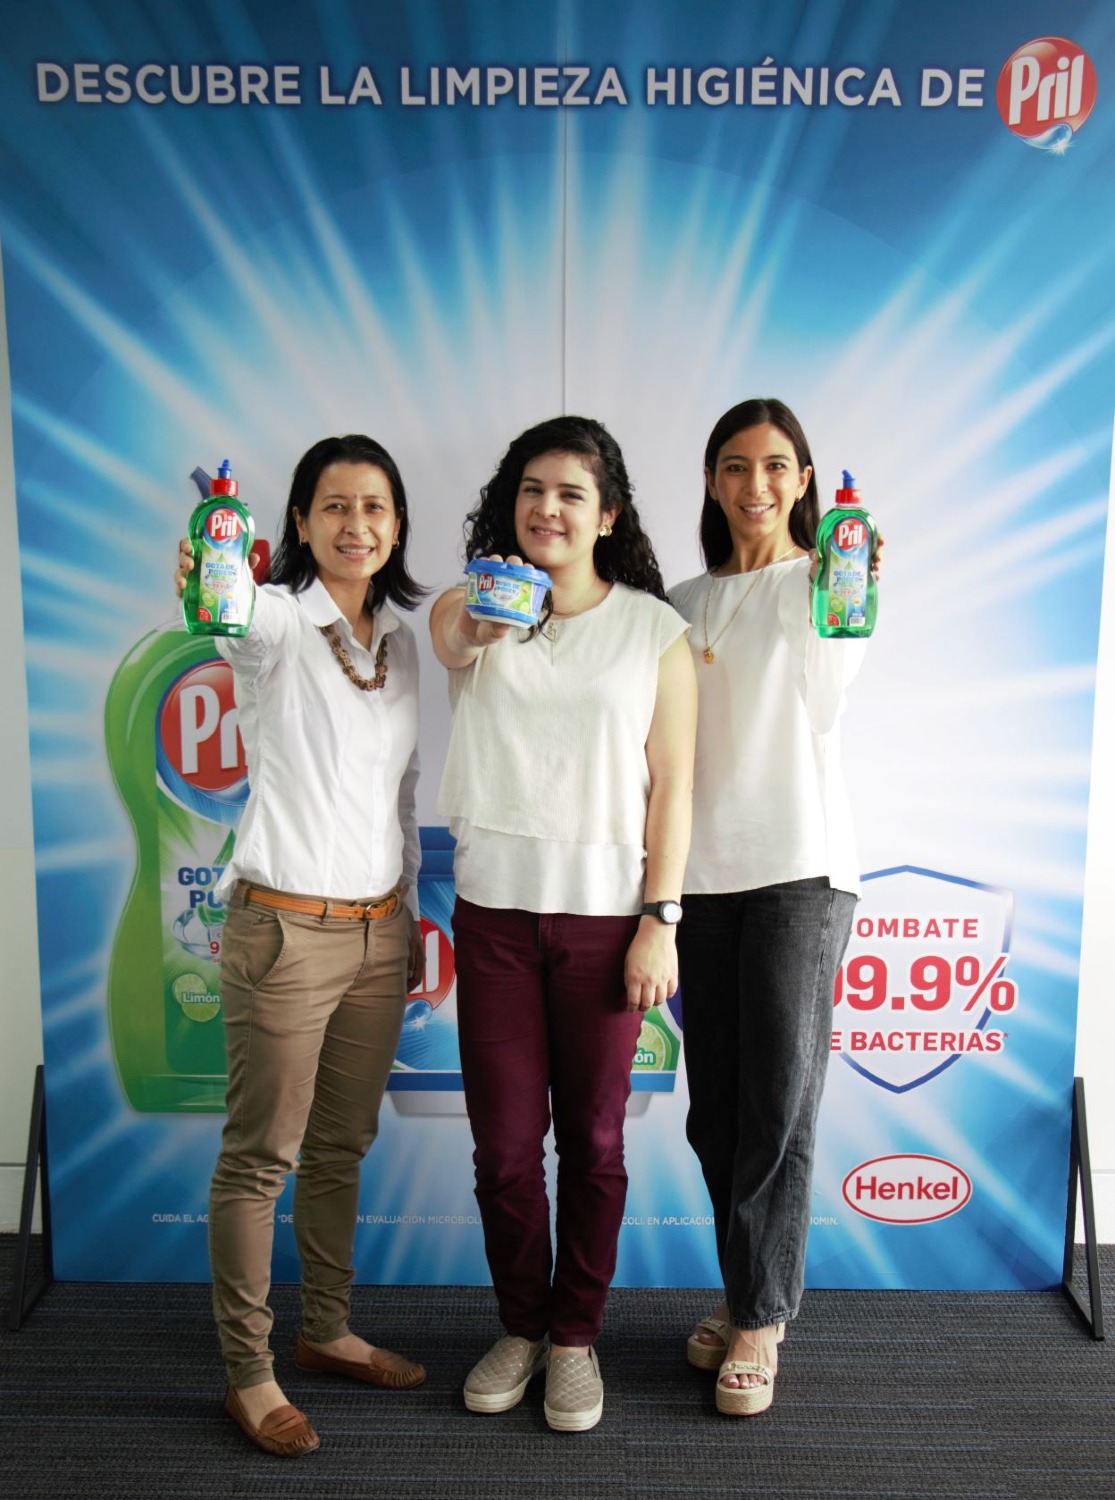 El nuevo Pril Limón Higiene de Henkel combate hasta el 99.9% de las bacterias